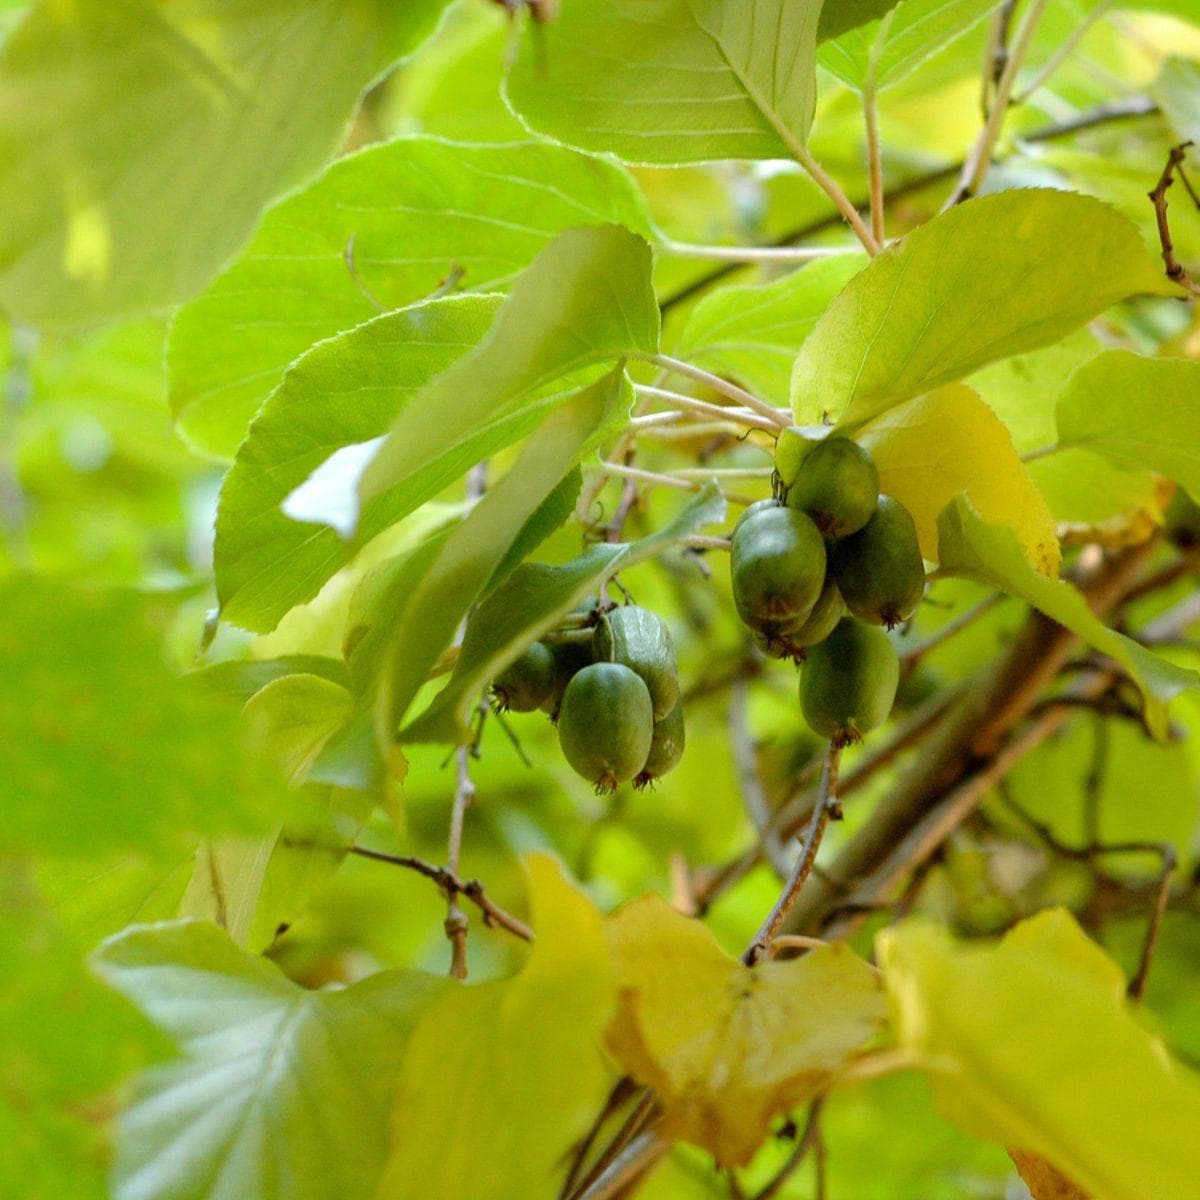 ackerbaum Kiwibeerenpflanze - Ananasnaya kaufen